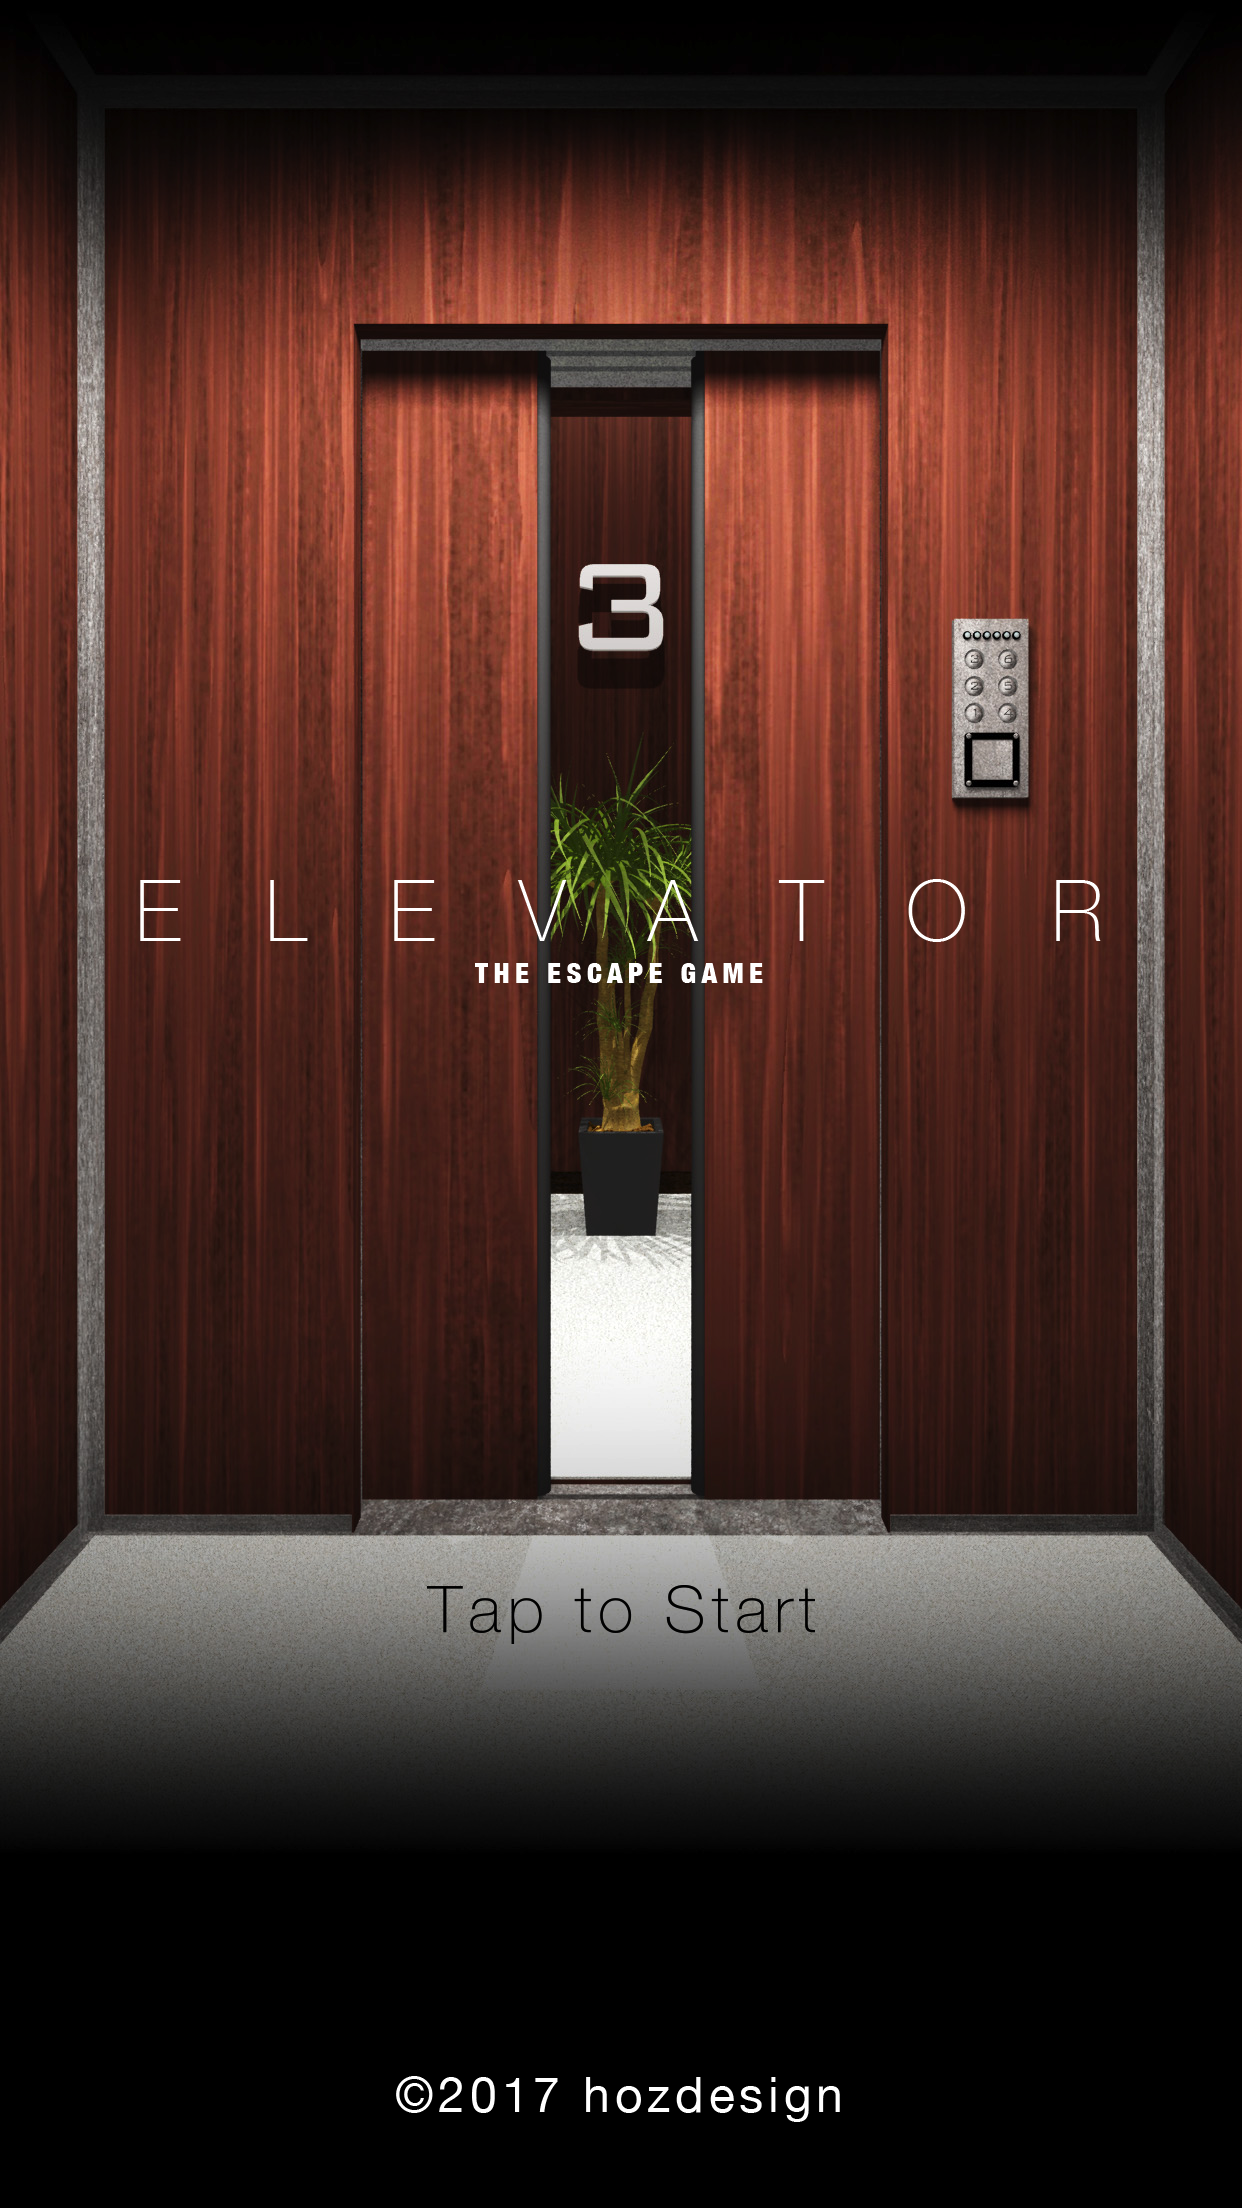 Screenshot 1 of 탈출 게임 "엘리베이터" 